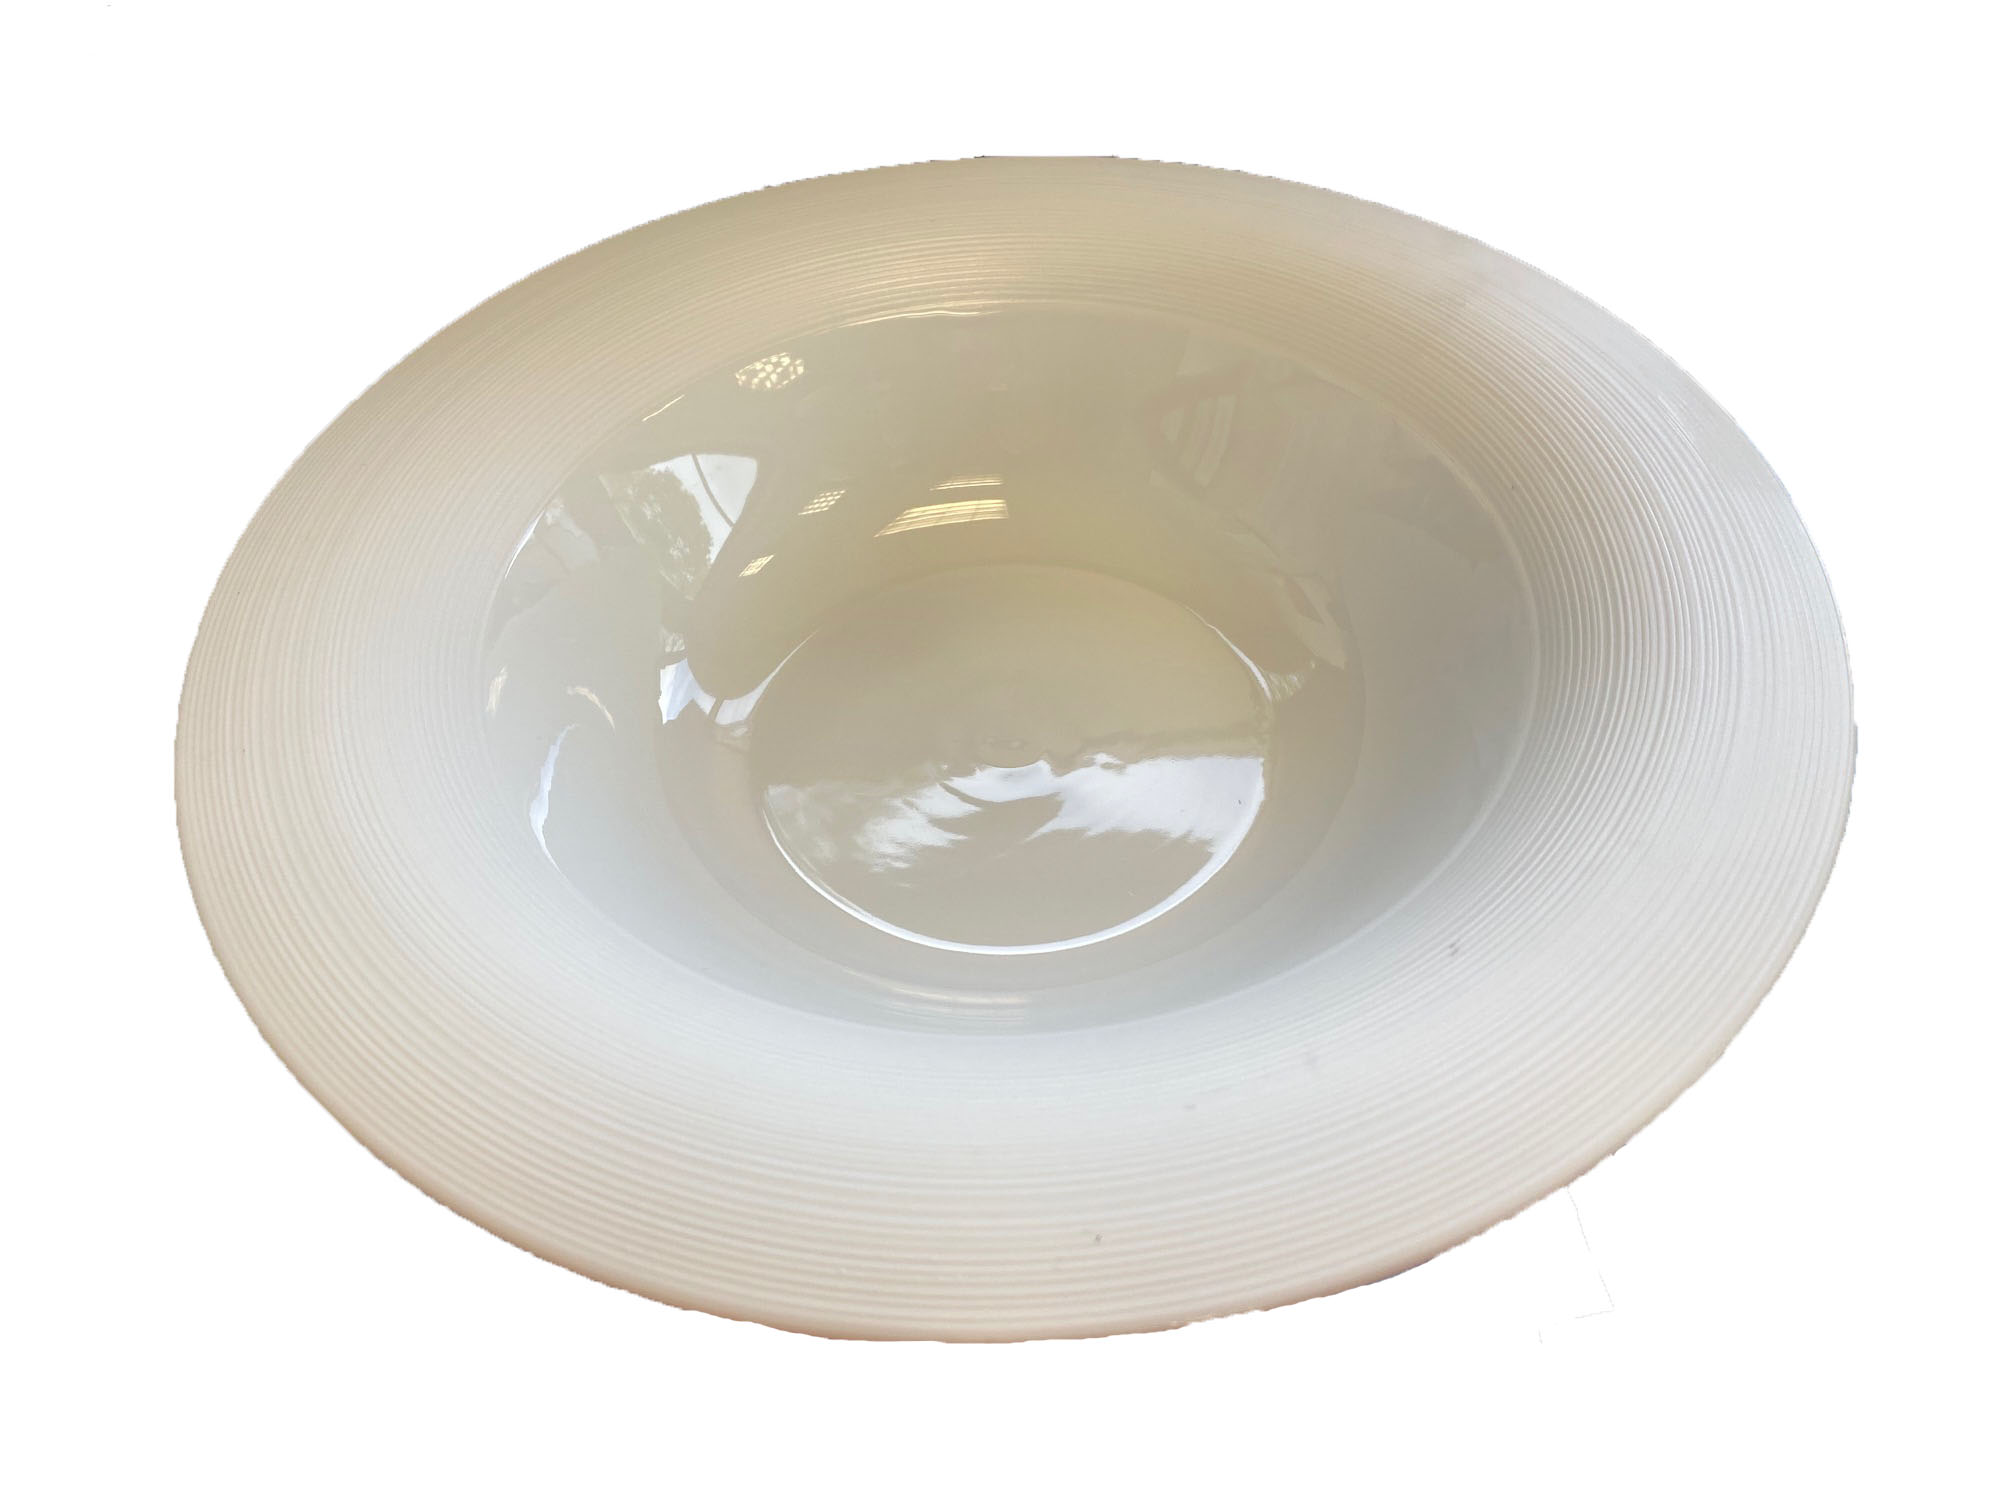 category_SA7001 - Saturn Bowl - Large